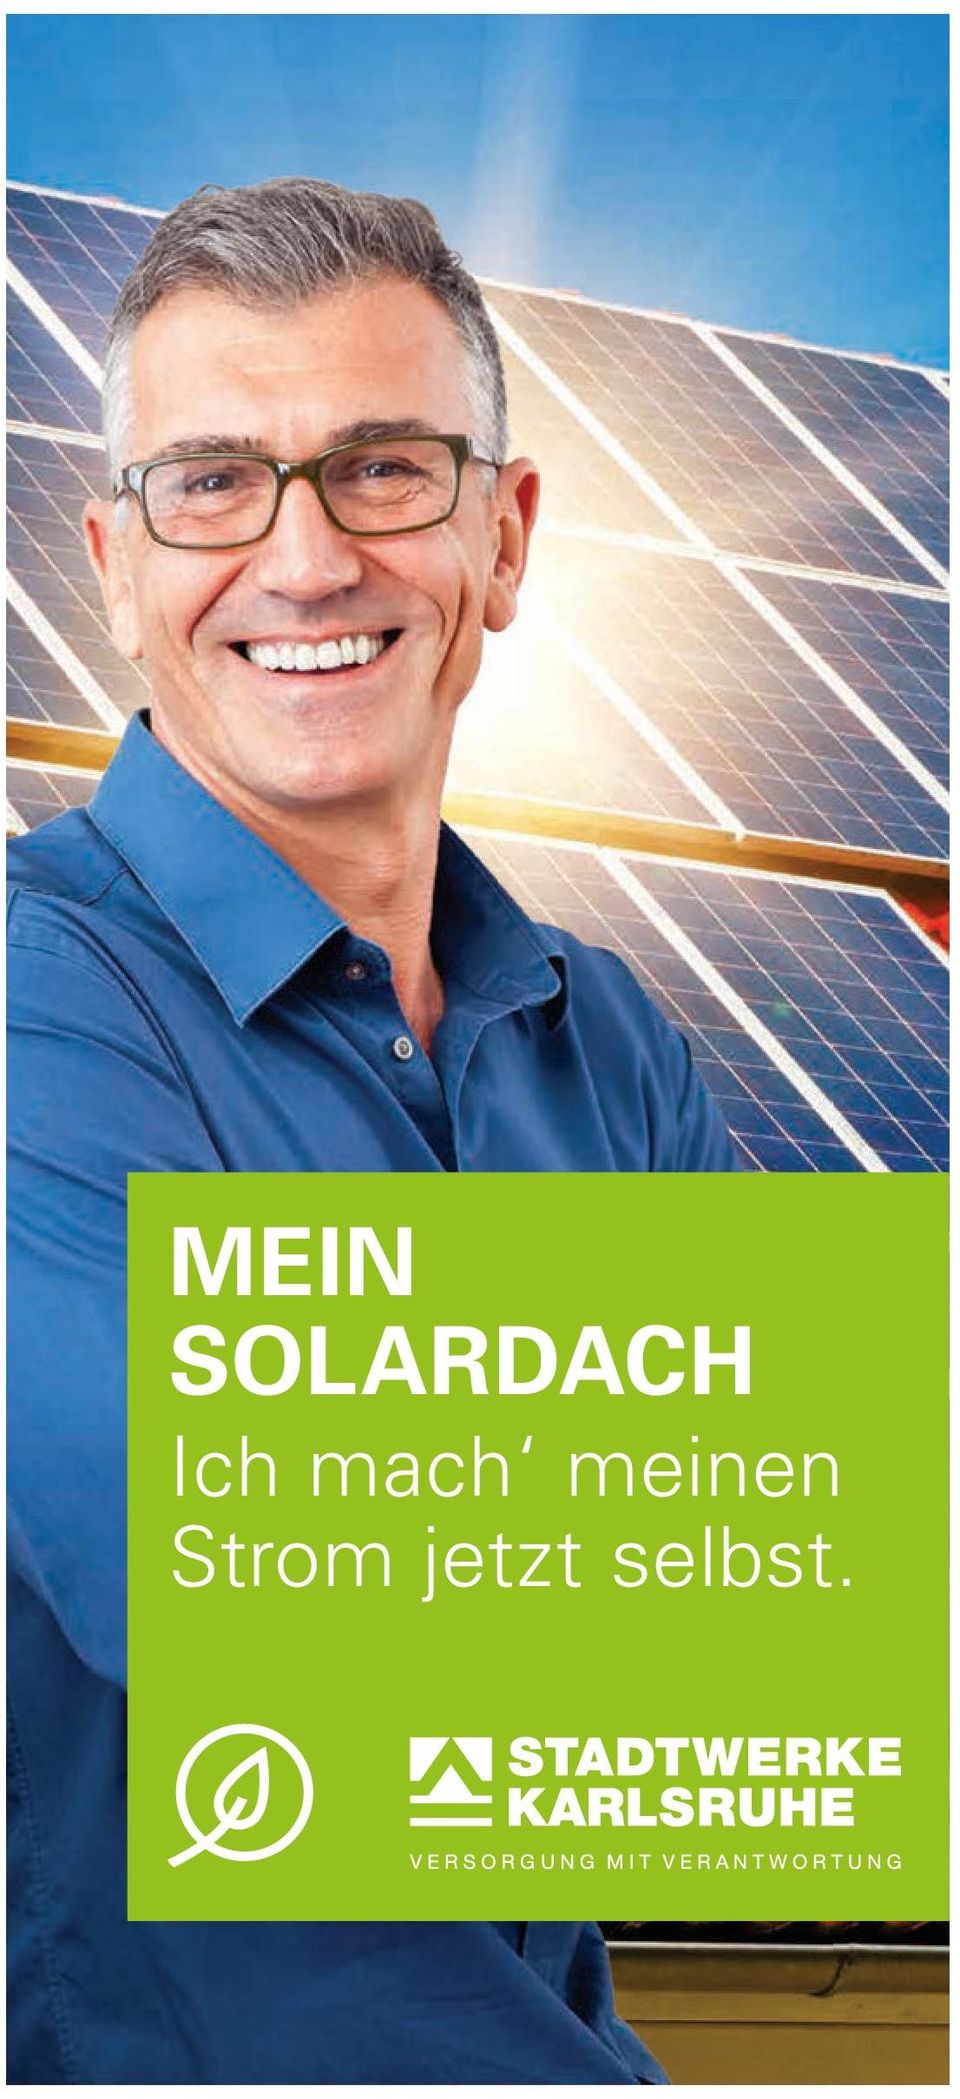 Ohne Risiko Ihr Solardach bekommen Sie von uns als Rundum-Sorglos-Paket. Kundencenter Kaiserstraße Energieberatung Kaiserstraße 182 Tel.